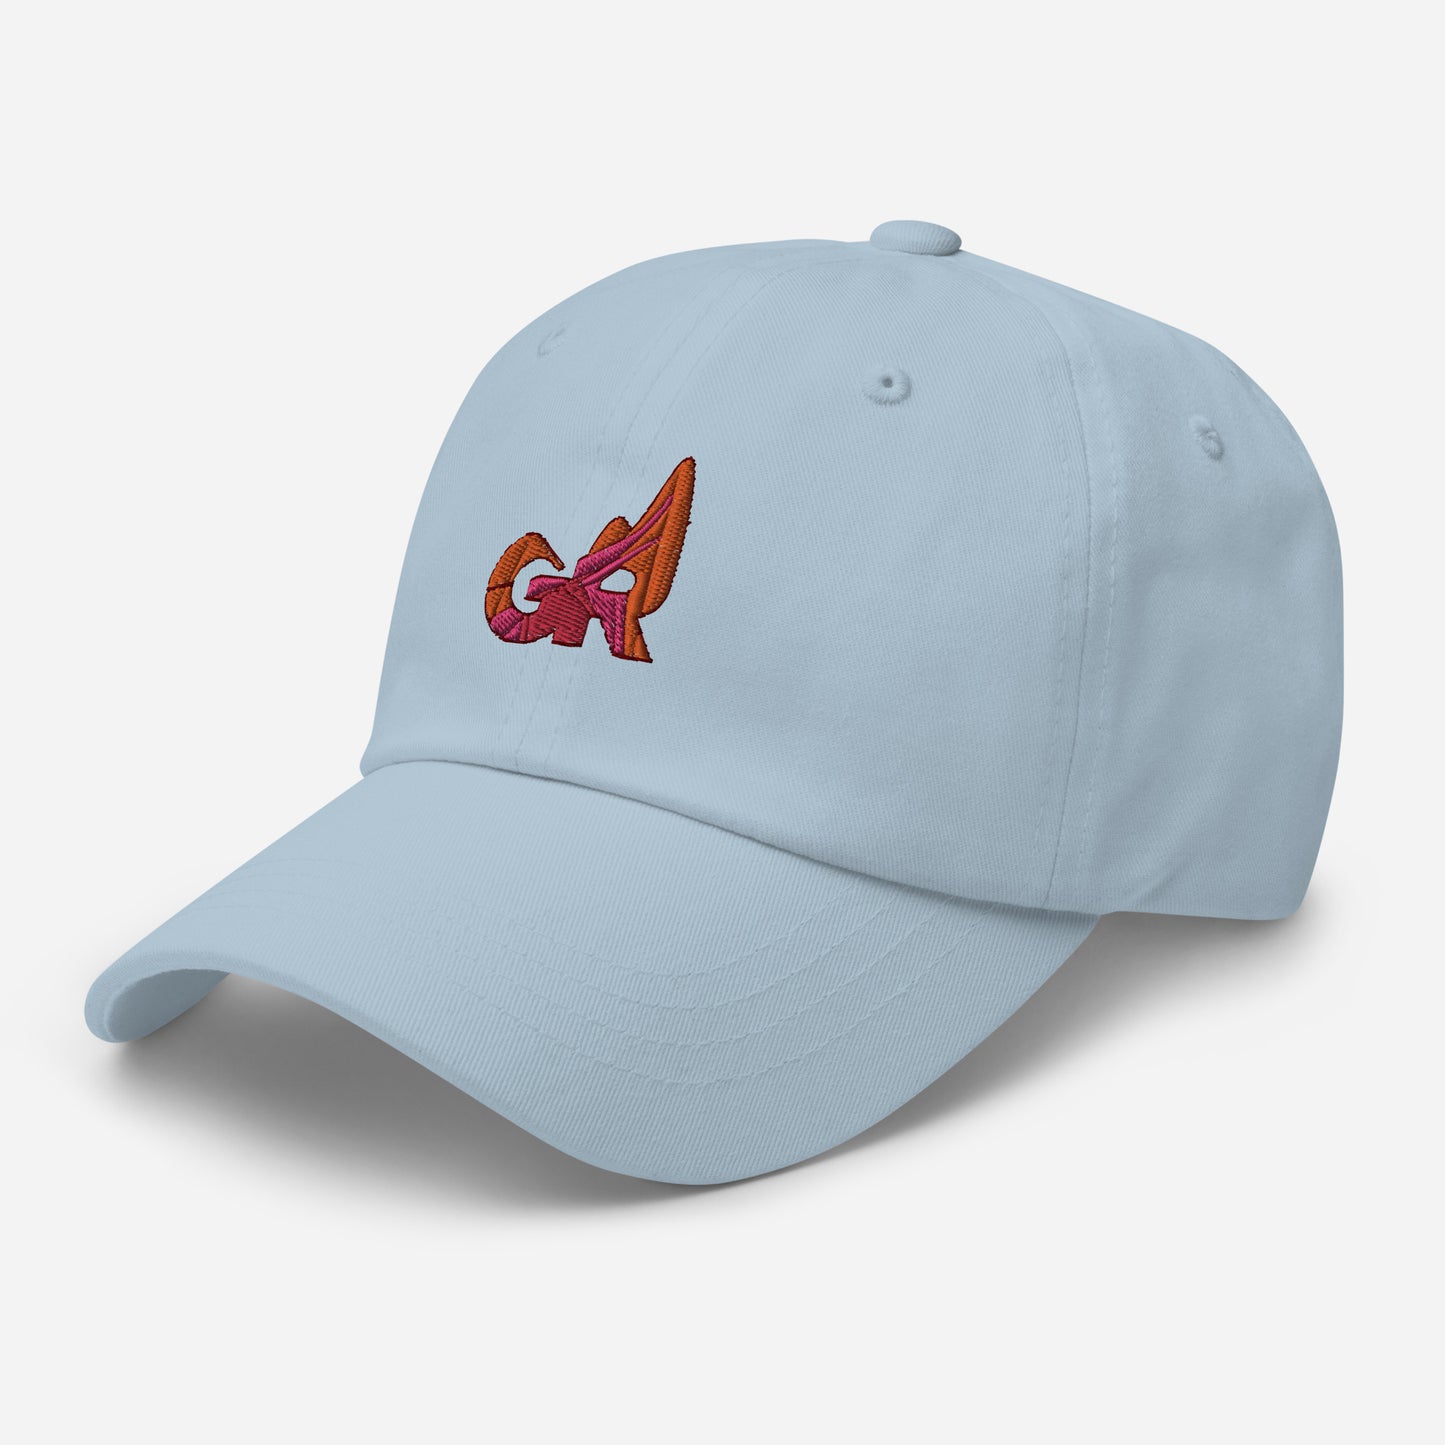 G.R. Dad Hat